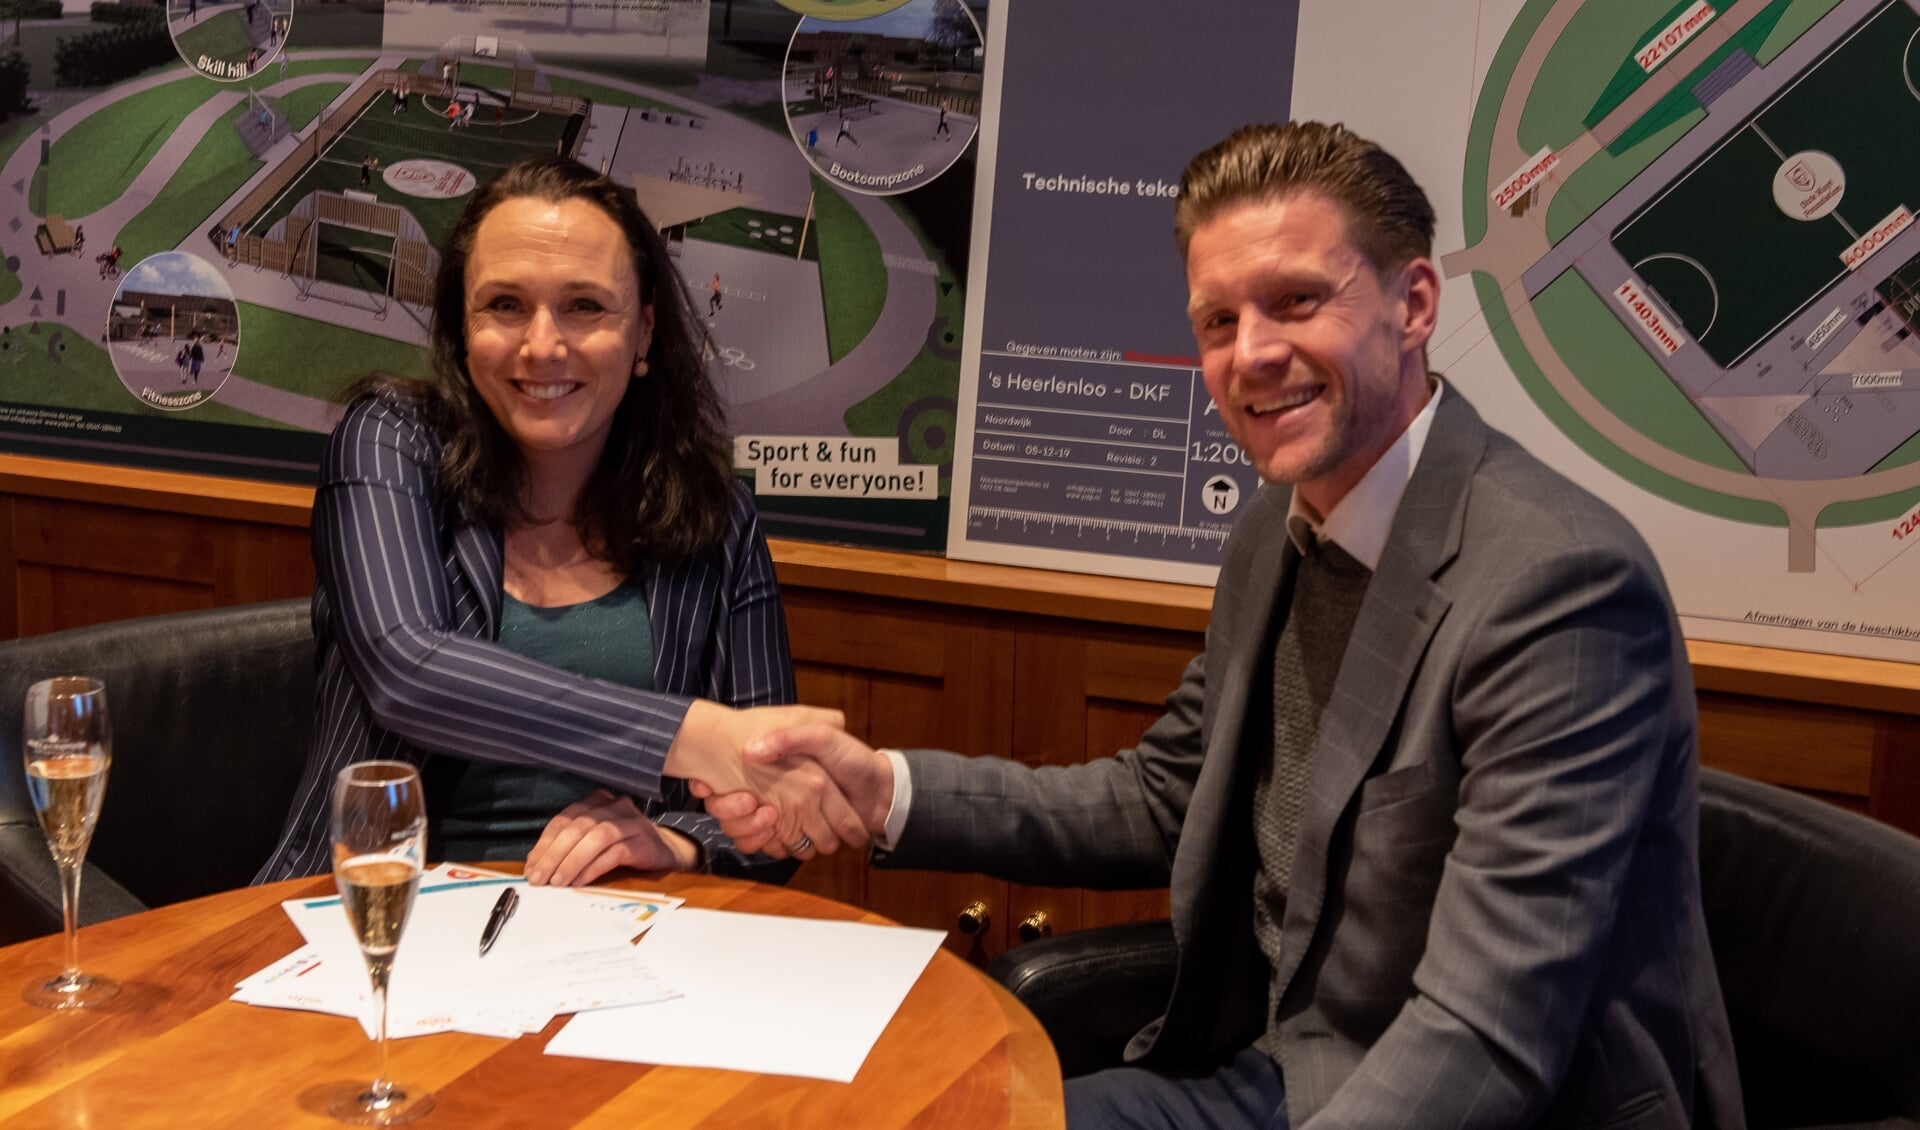 Fleur Drexhage (’s Heeren Loo) en Mario Hofman (Yalp) tijdens de ondertekening van het contract ter verwezenlijking van het sportveld. 